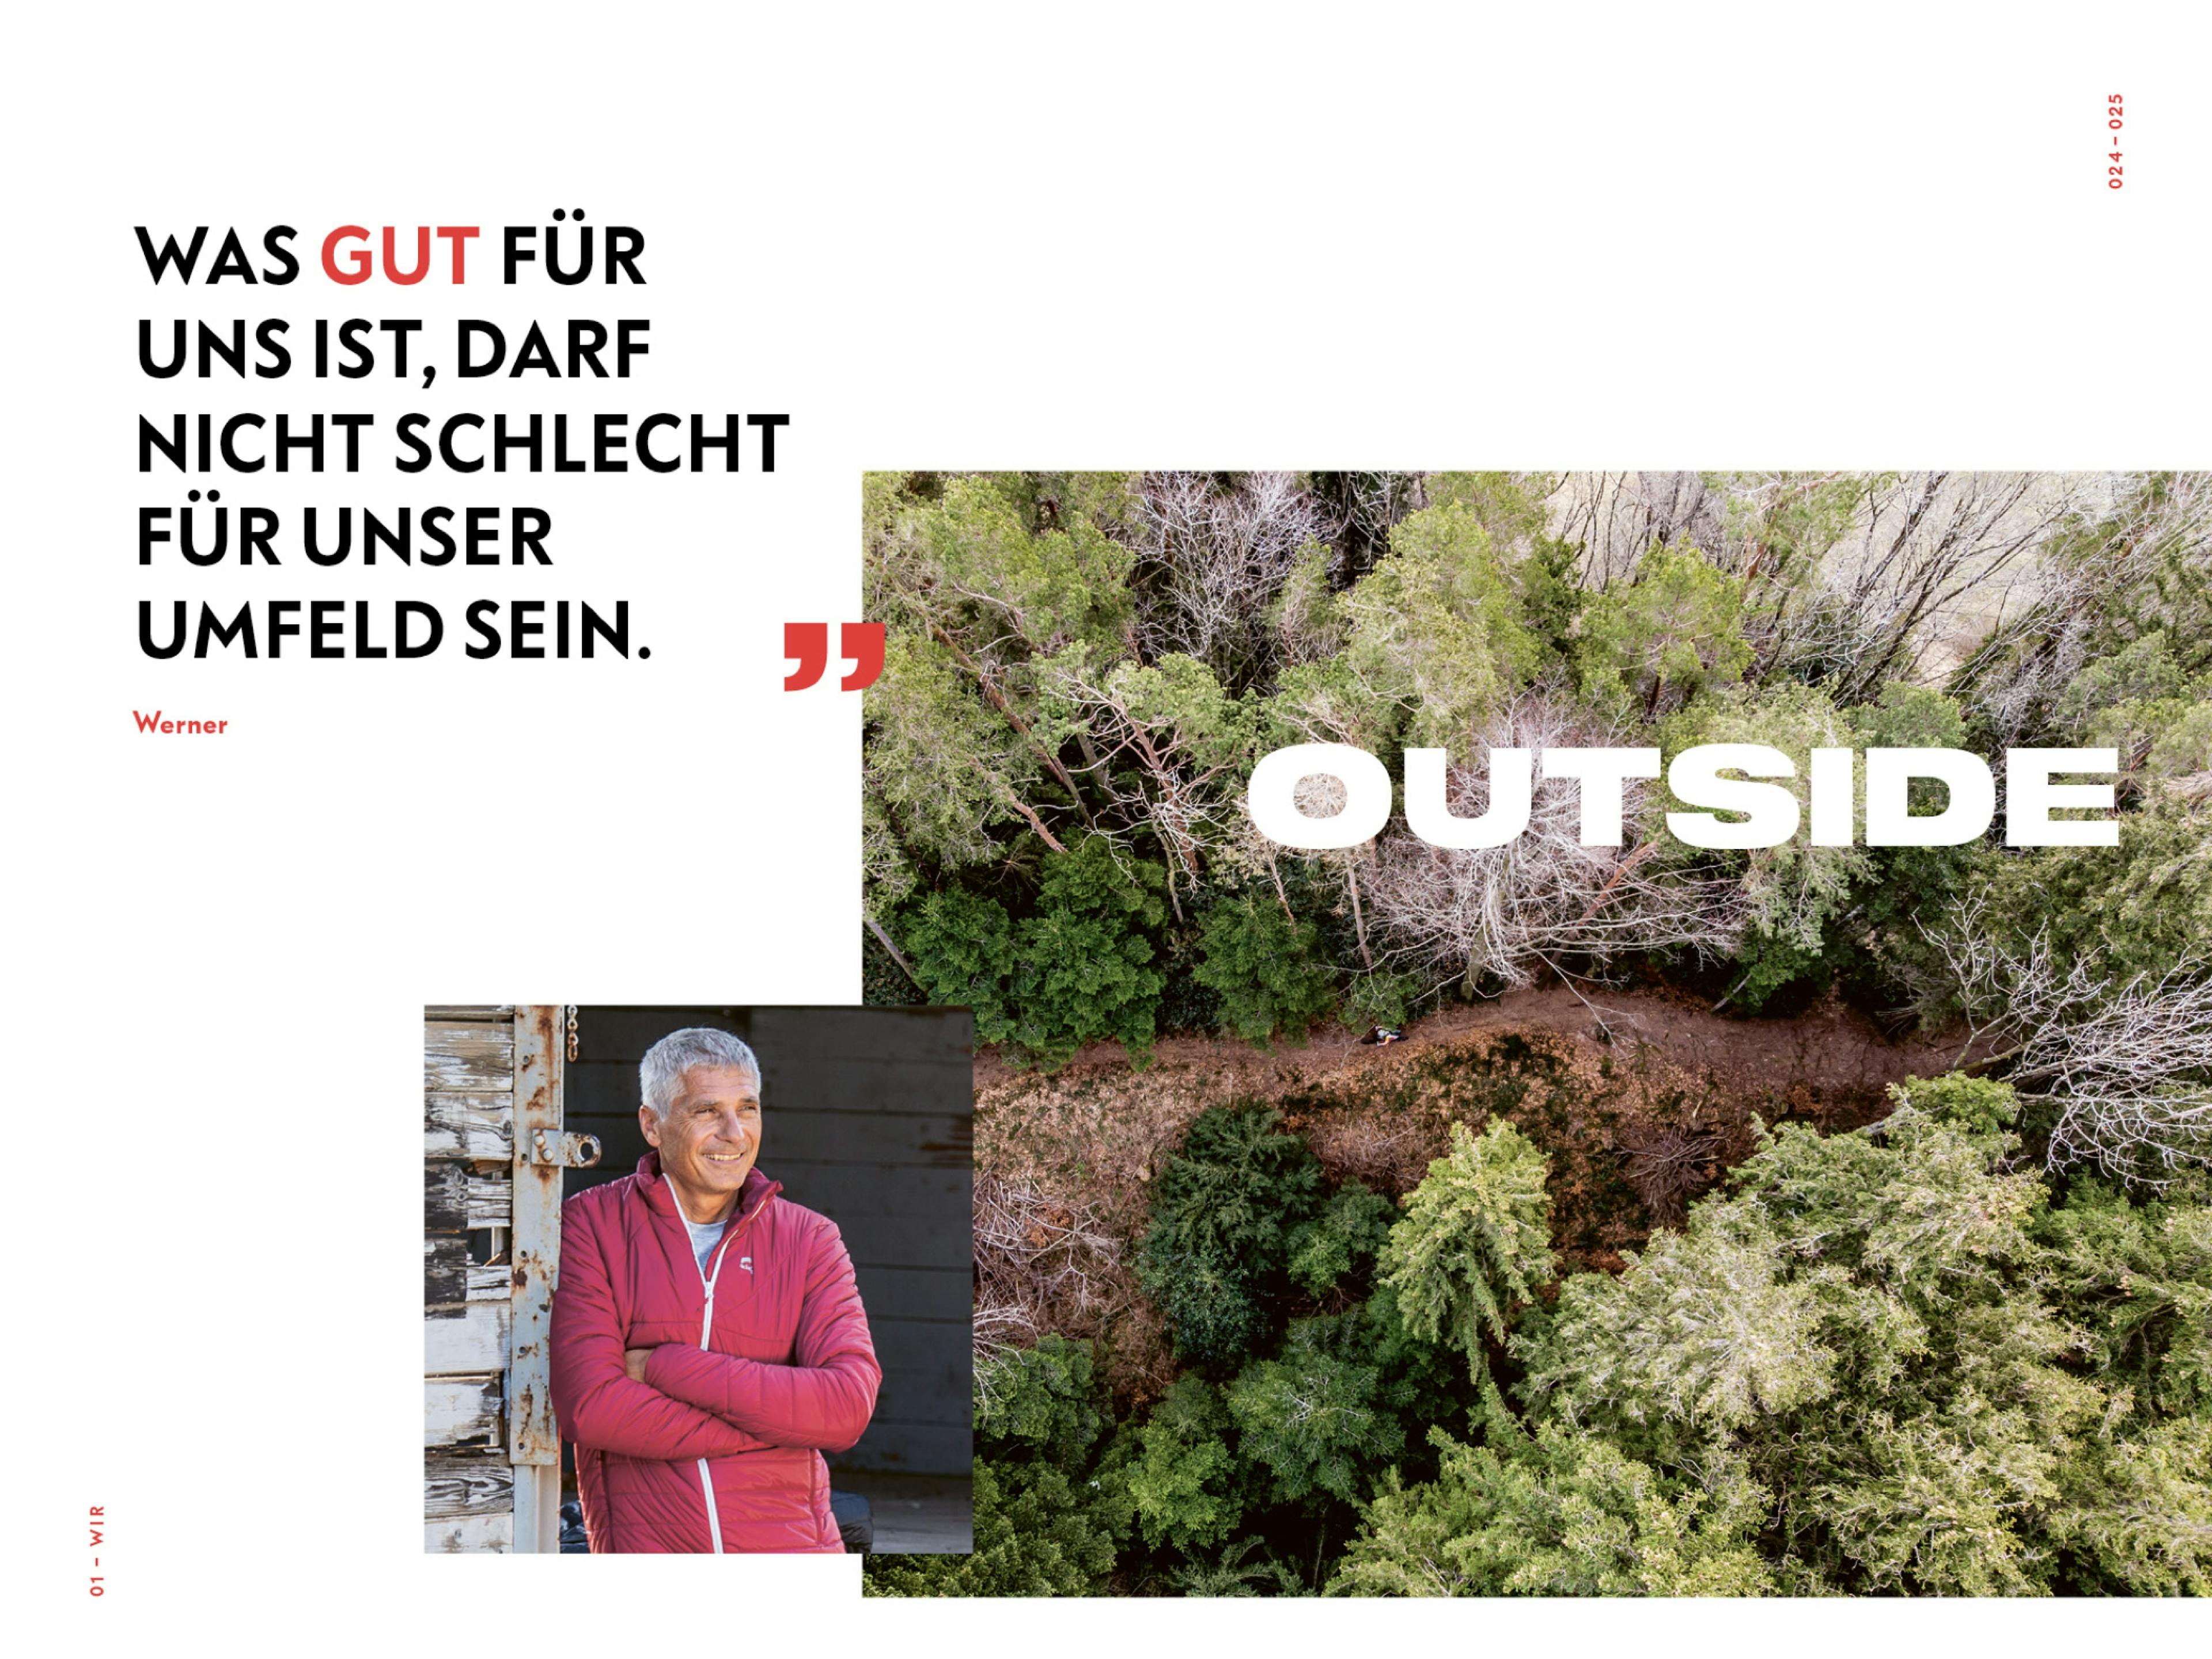 Doppelseite Nachhaltigkeit des skinfit brandbooks mit Zitat von Werner: Was gut für uns ist, darf nicht schelcht für unser Umfeld sein. © gm gobiq